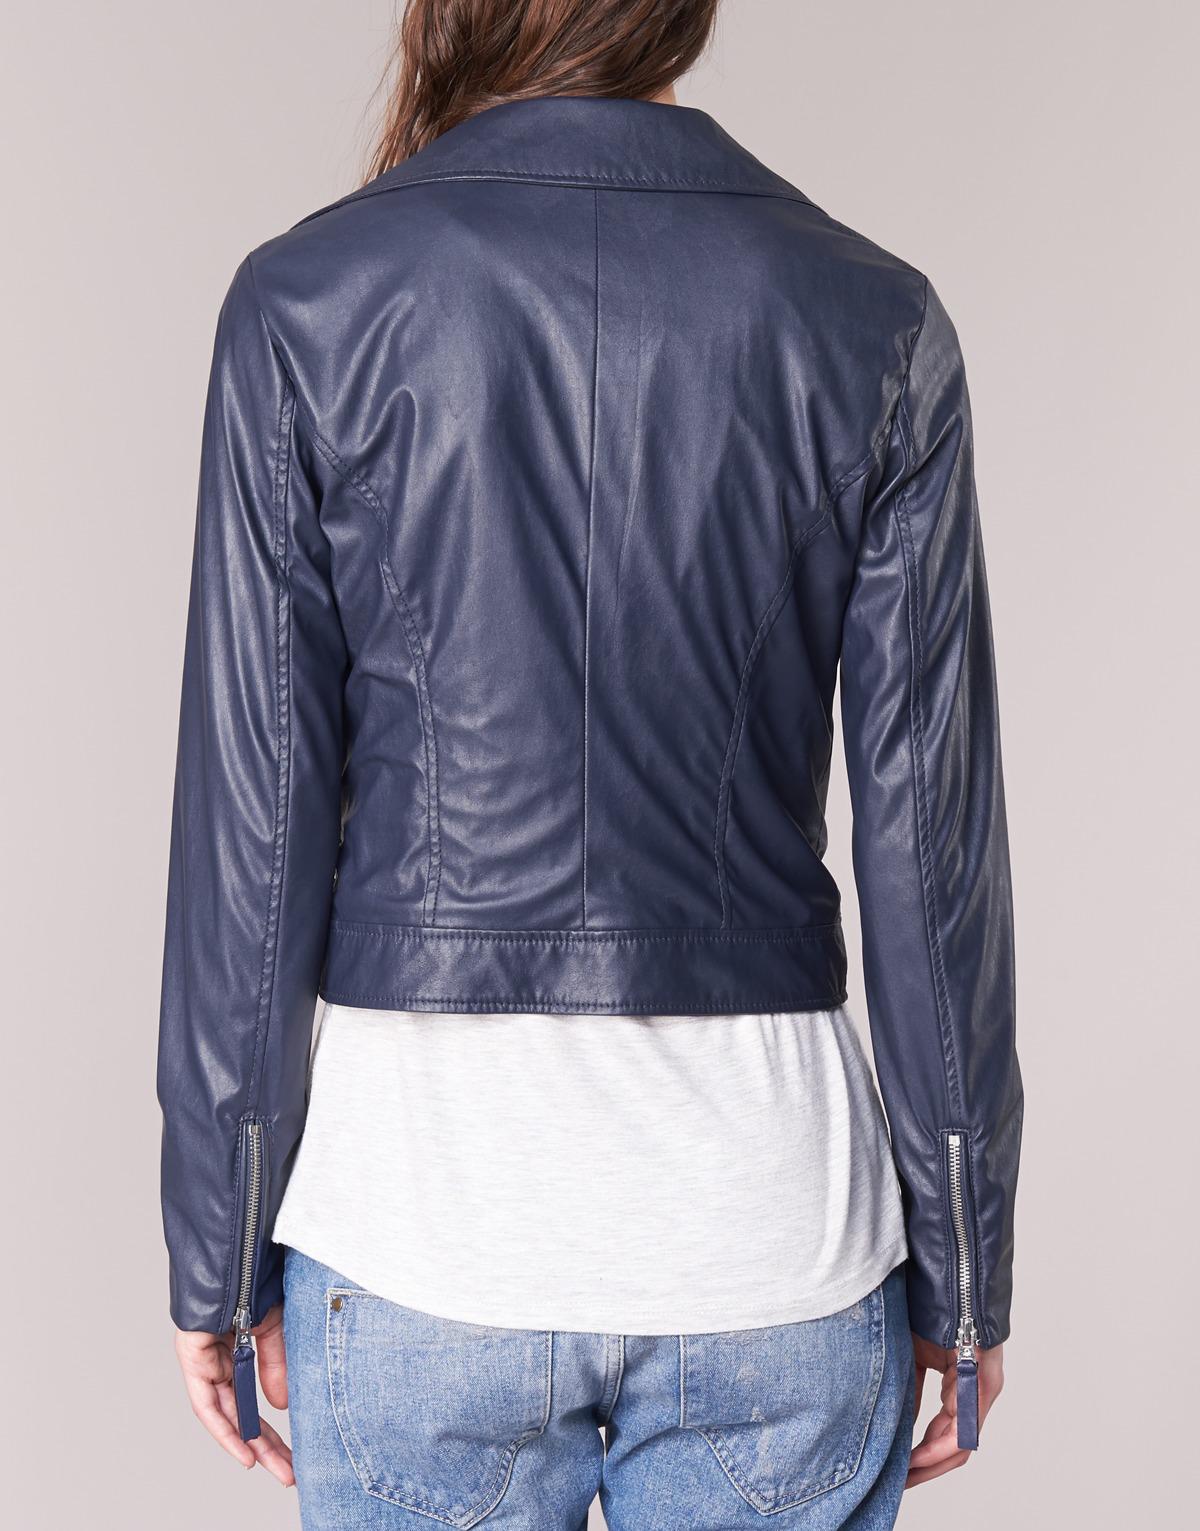 Benetton Ferdoni Women's Leather Jacket In Blue - Lyst